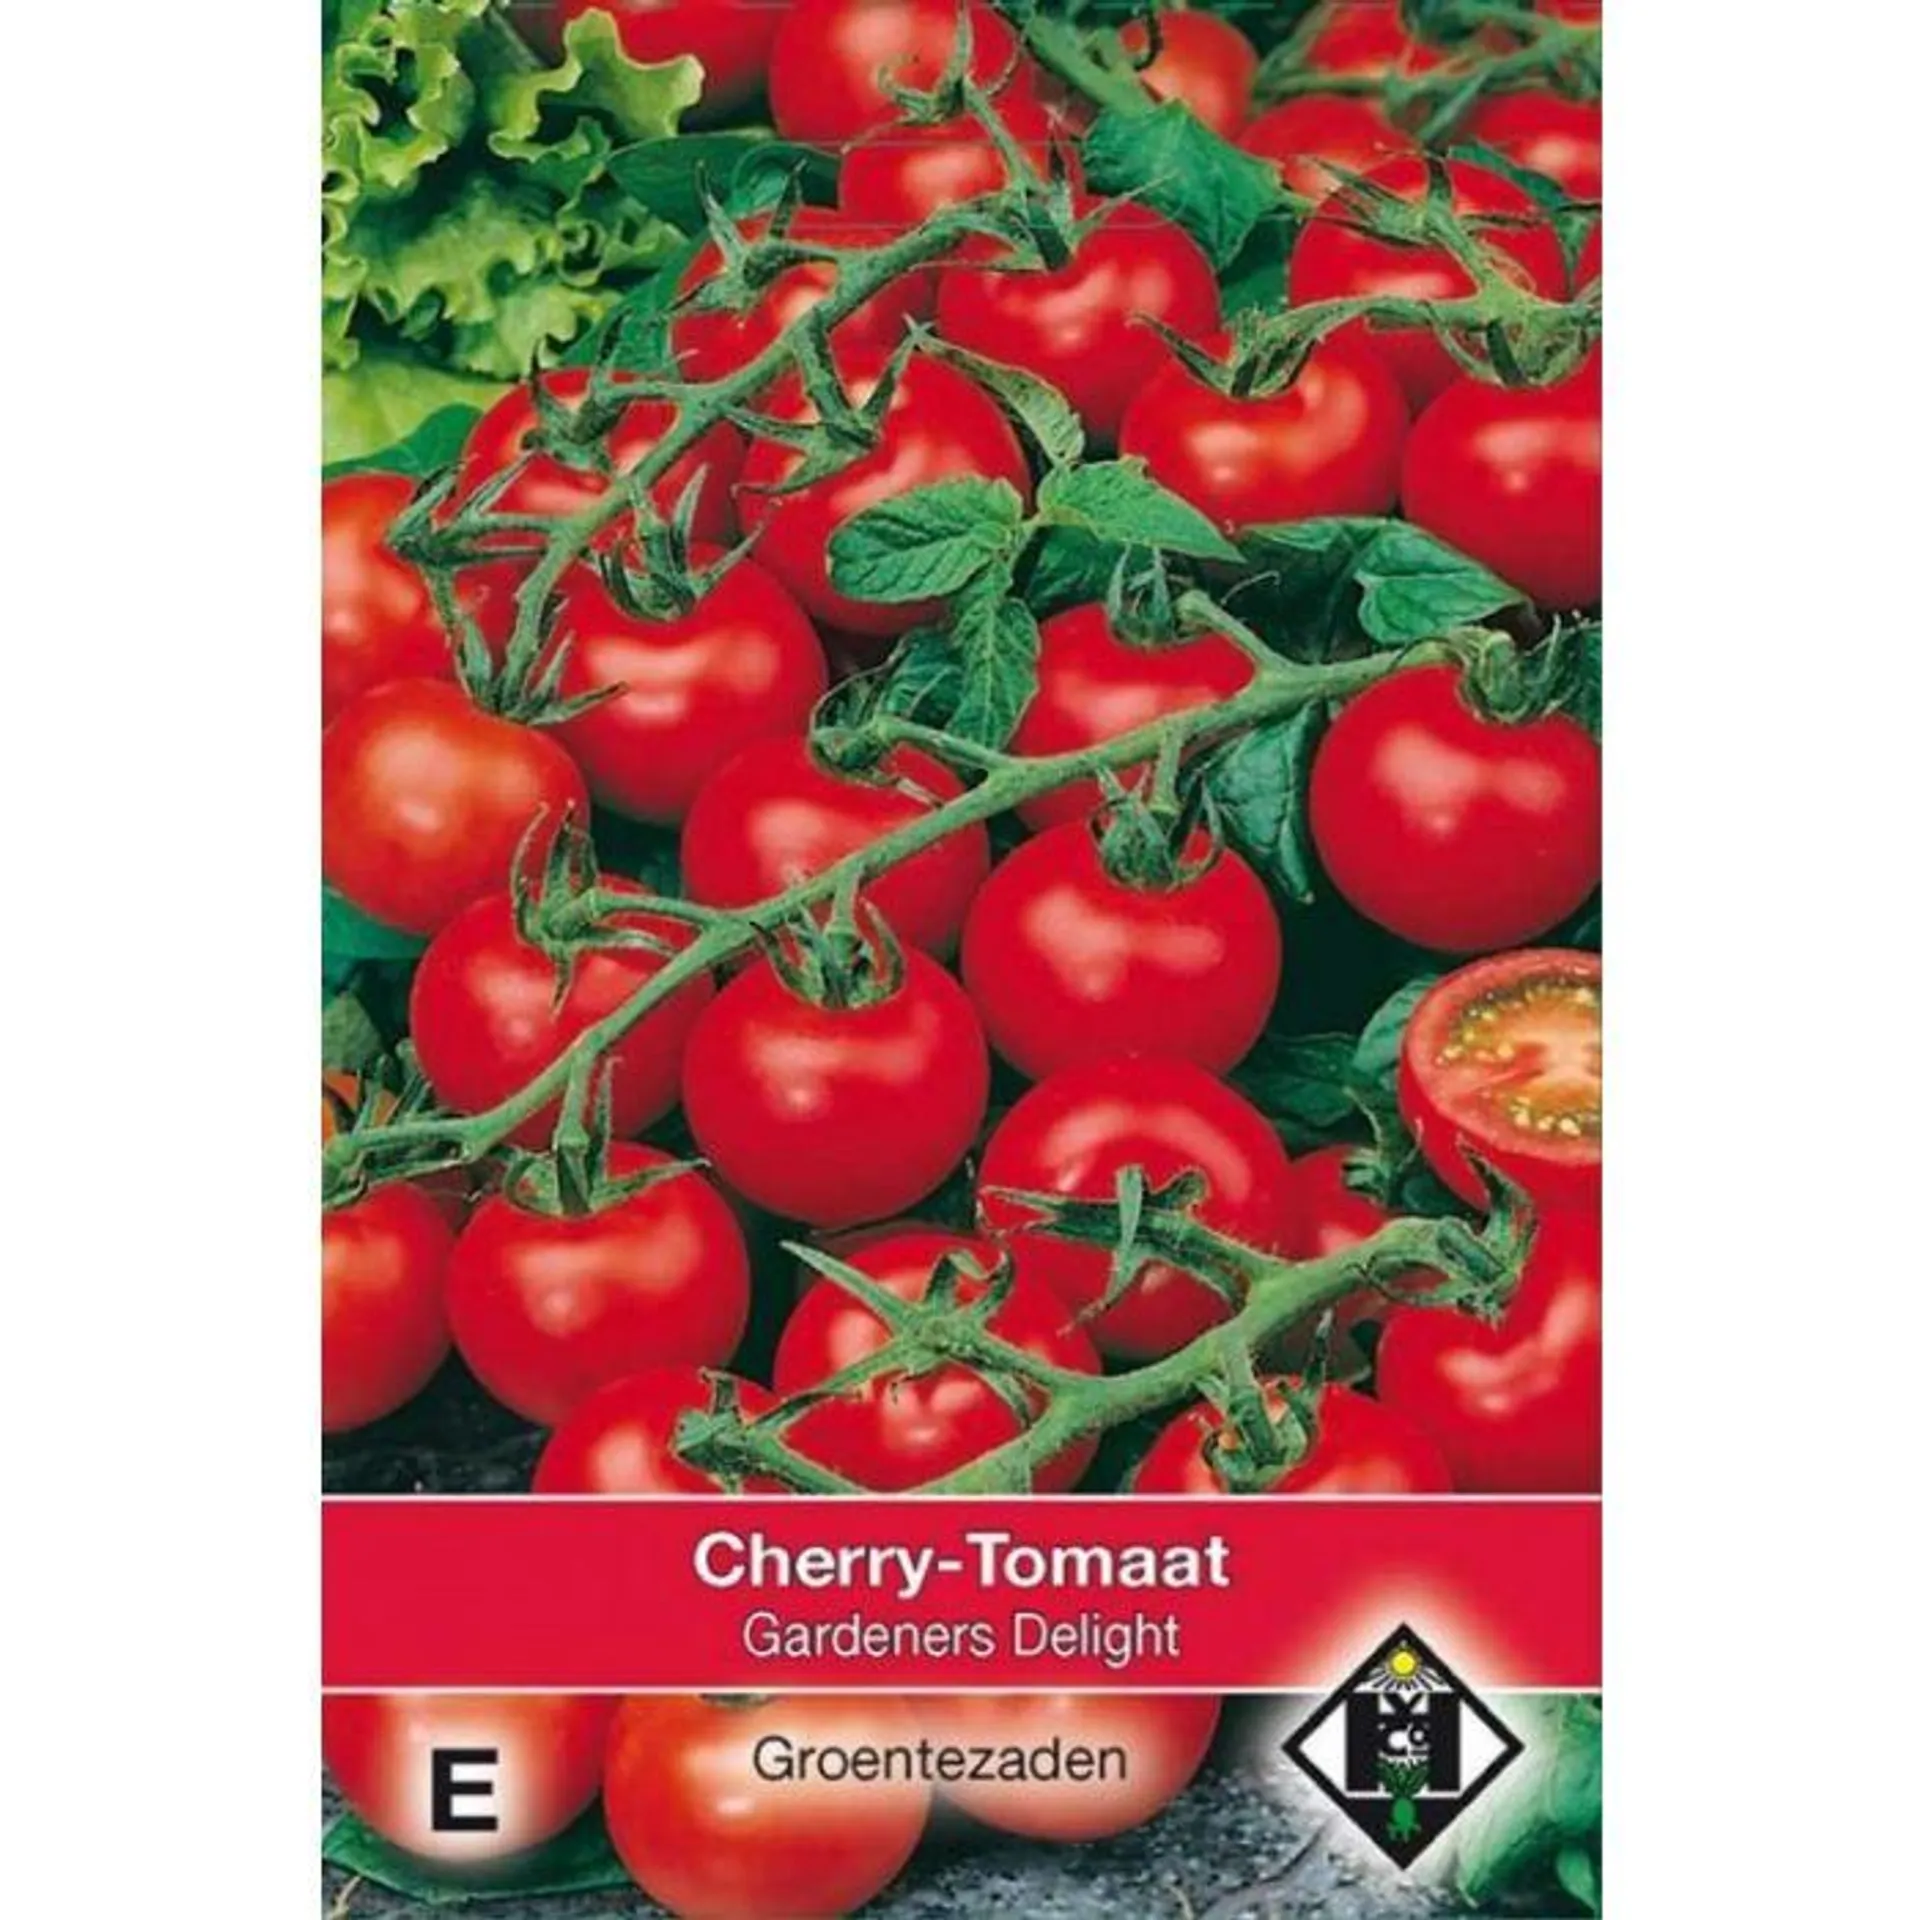 Cherry-Tomaat - Gardeners Delight